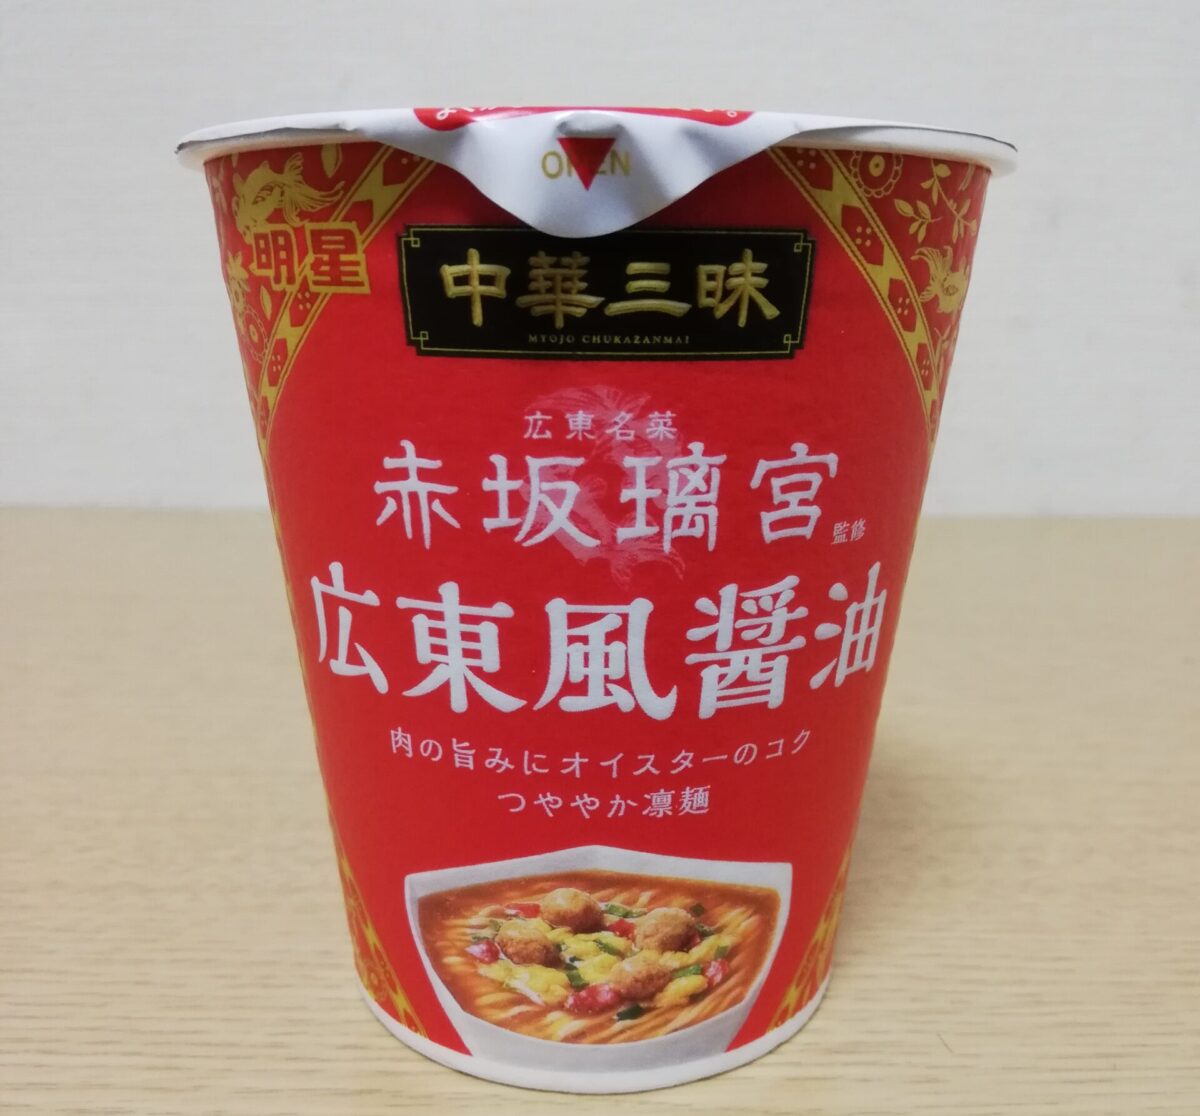 明星 中華三昧 赤坂璃宮 広東風醤油 の感想 21年2月15日発売 ノンフライカップ麺